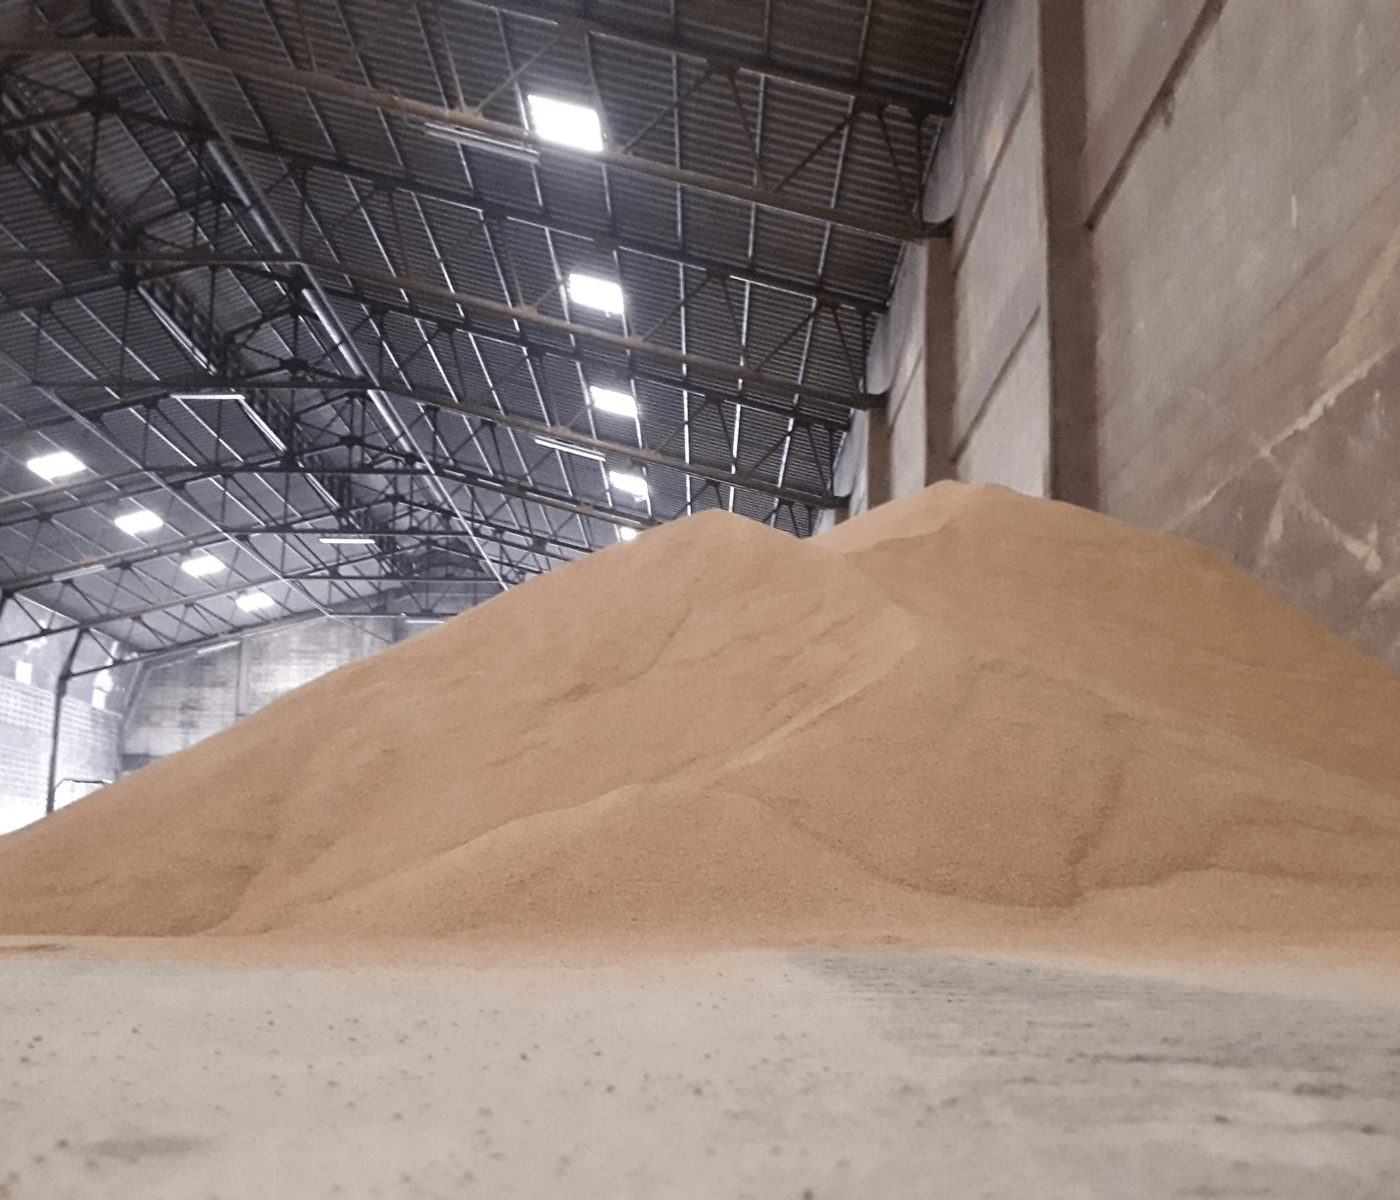 Conab aponta para aumento da demanda por armazéns de grãos